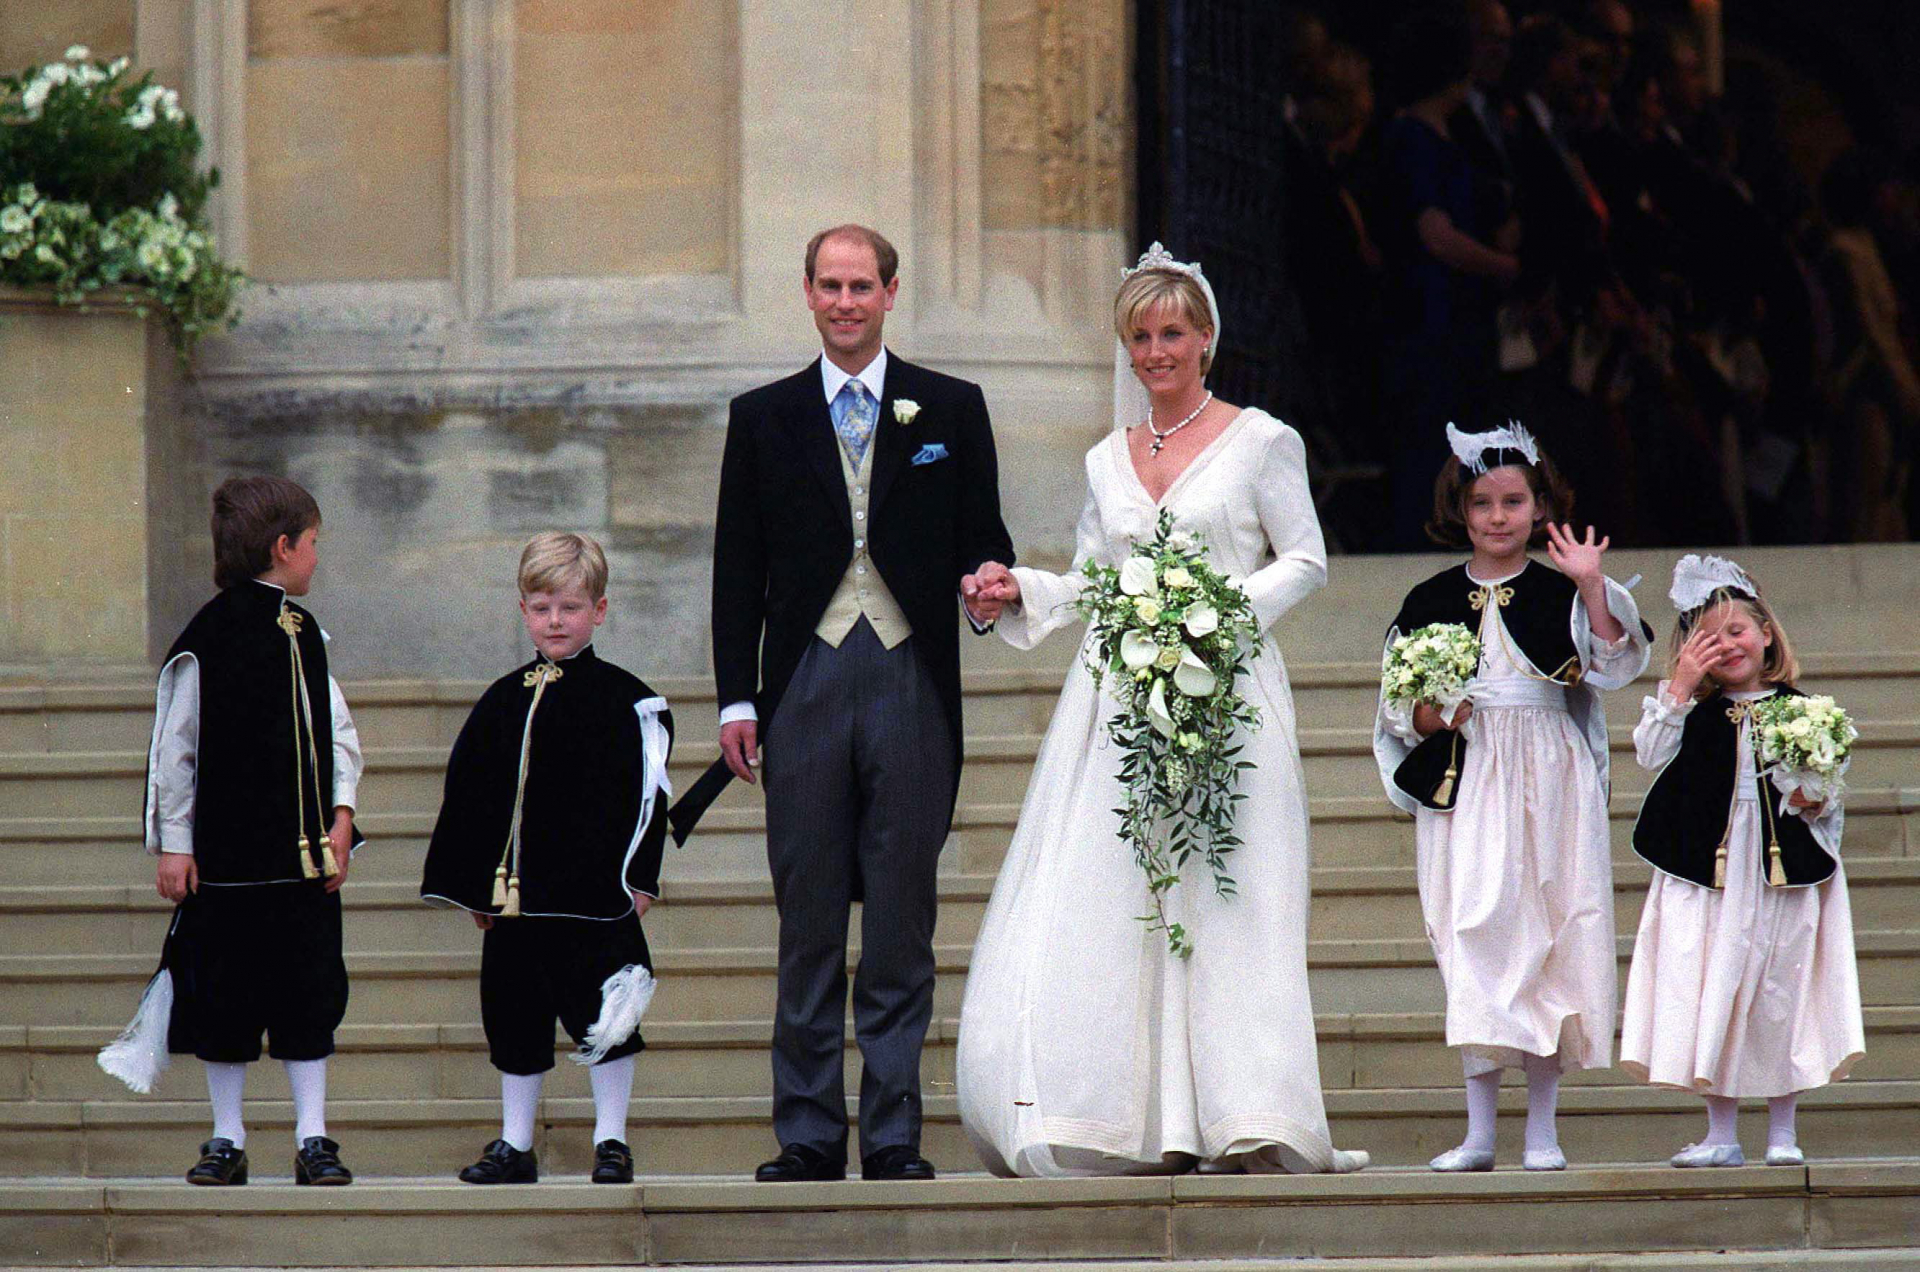 Meghan vagy Katalin volt a szebb menyasszony? Íme, minden idők legszebb királyi esküvői ruhái